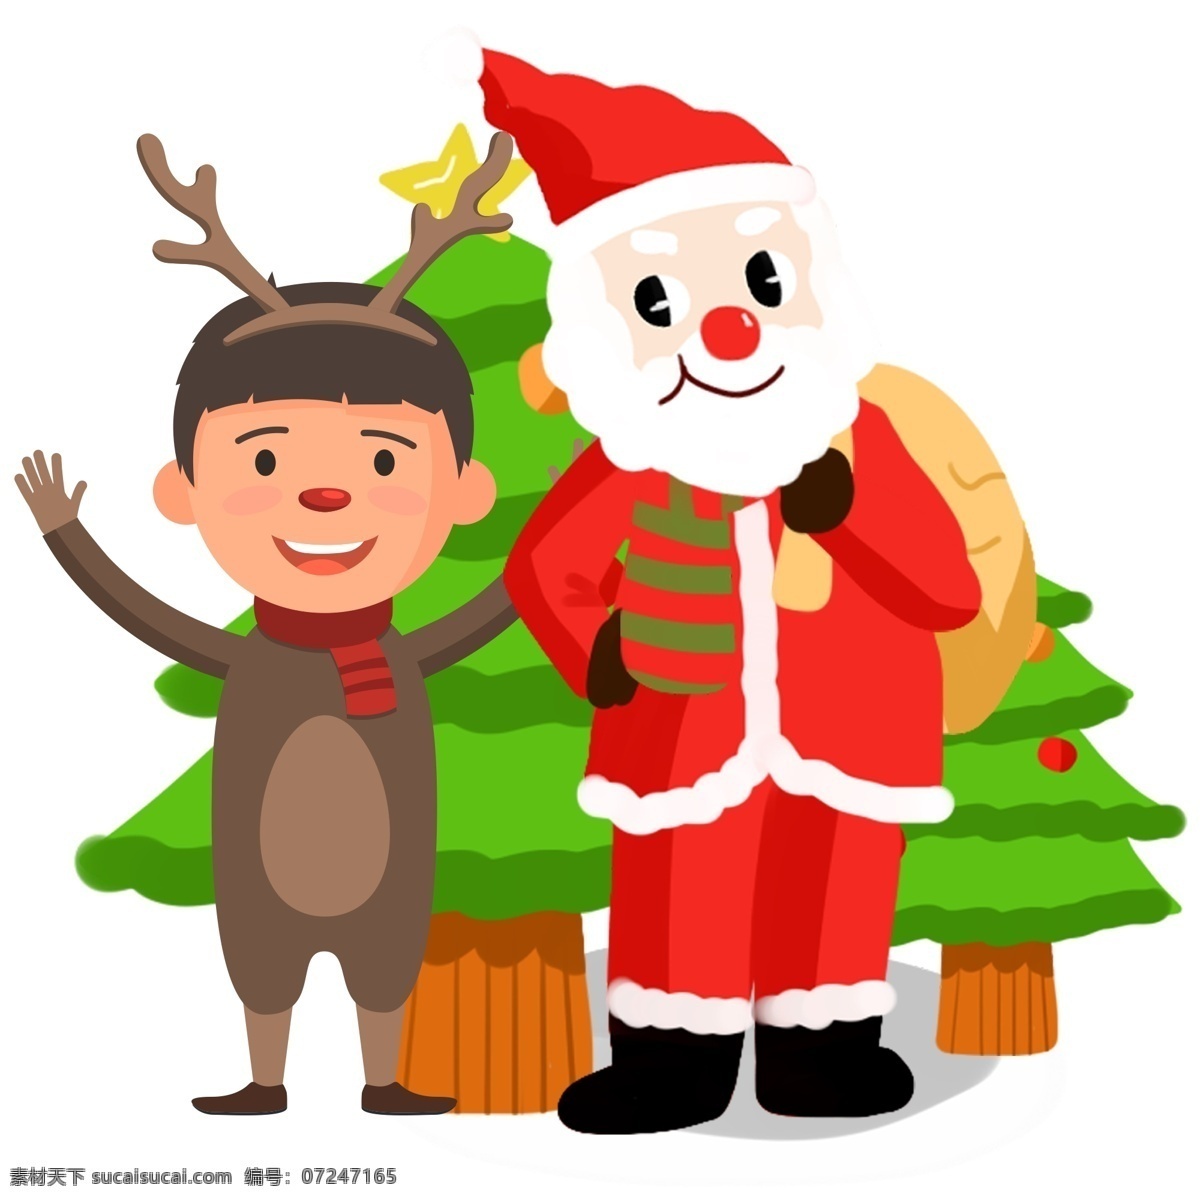 圣诞节 可爱 圣诞老人 卡通 插 圣诞树 插画 合集 圣诞 过节 节日 冬季 淘宝 天猫 海报 活动 促销 大促 送礼物的老人